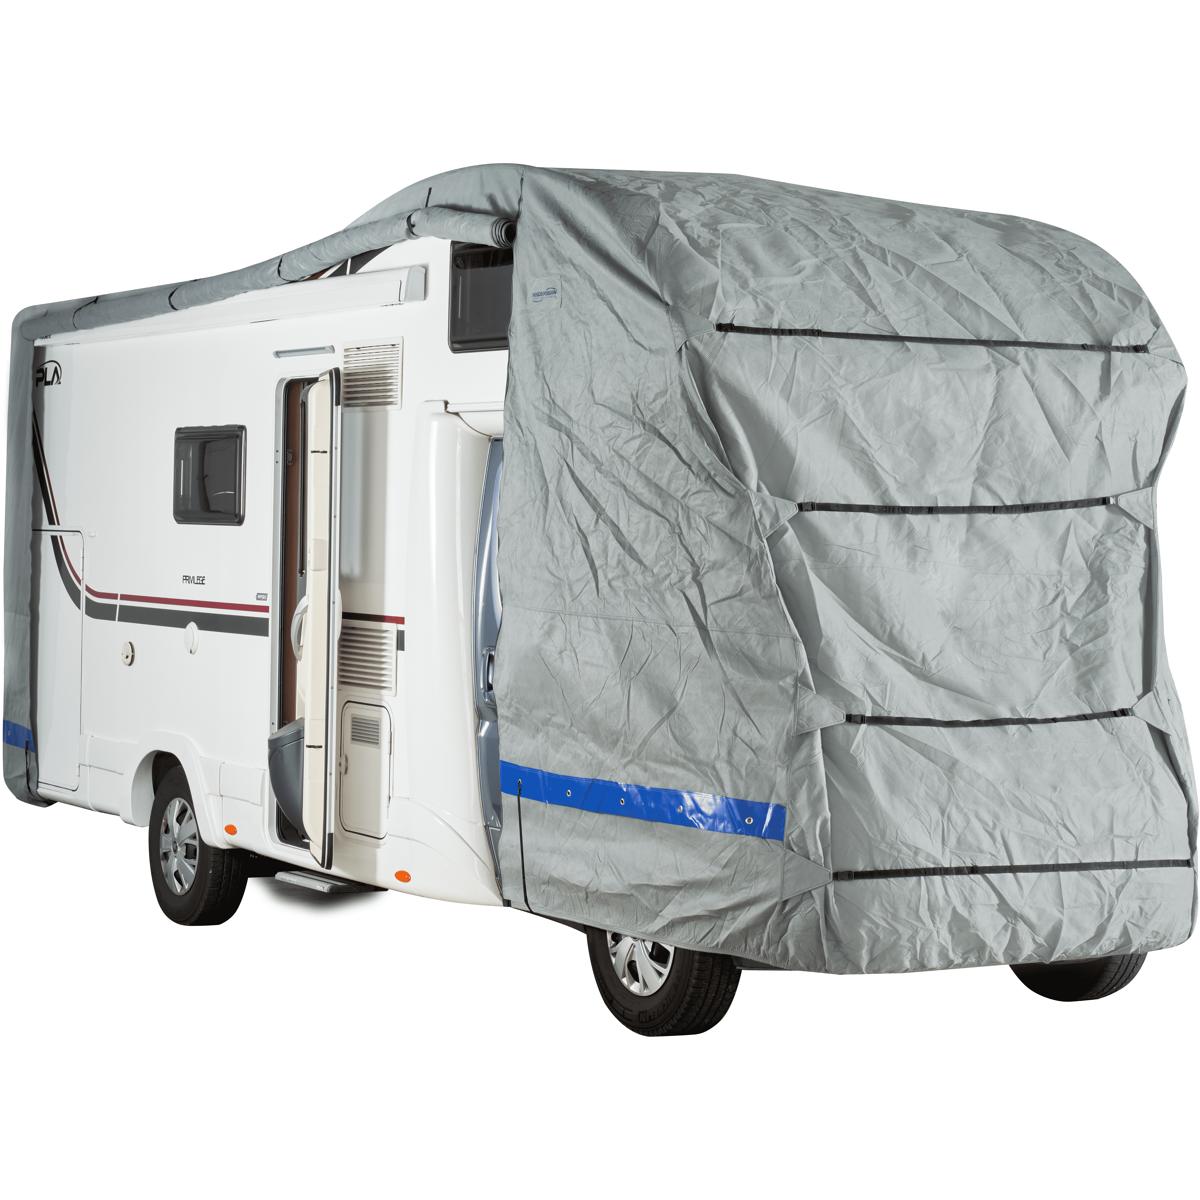 Protection toit Caravane & Camping Car 650 HINDERMANN